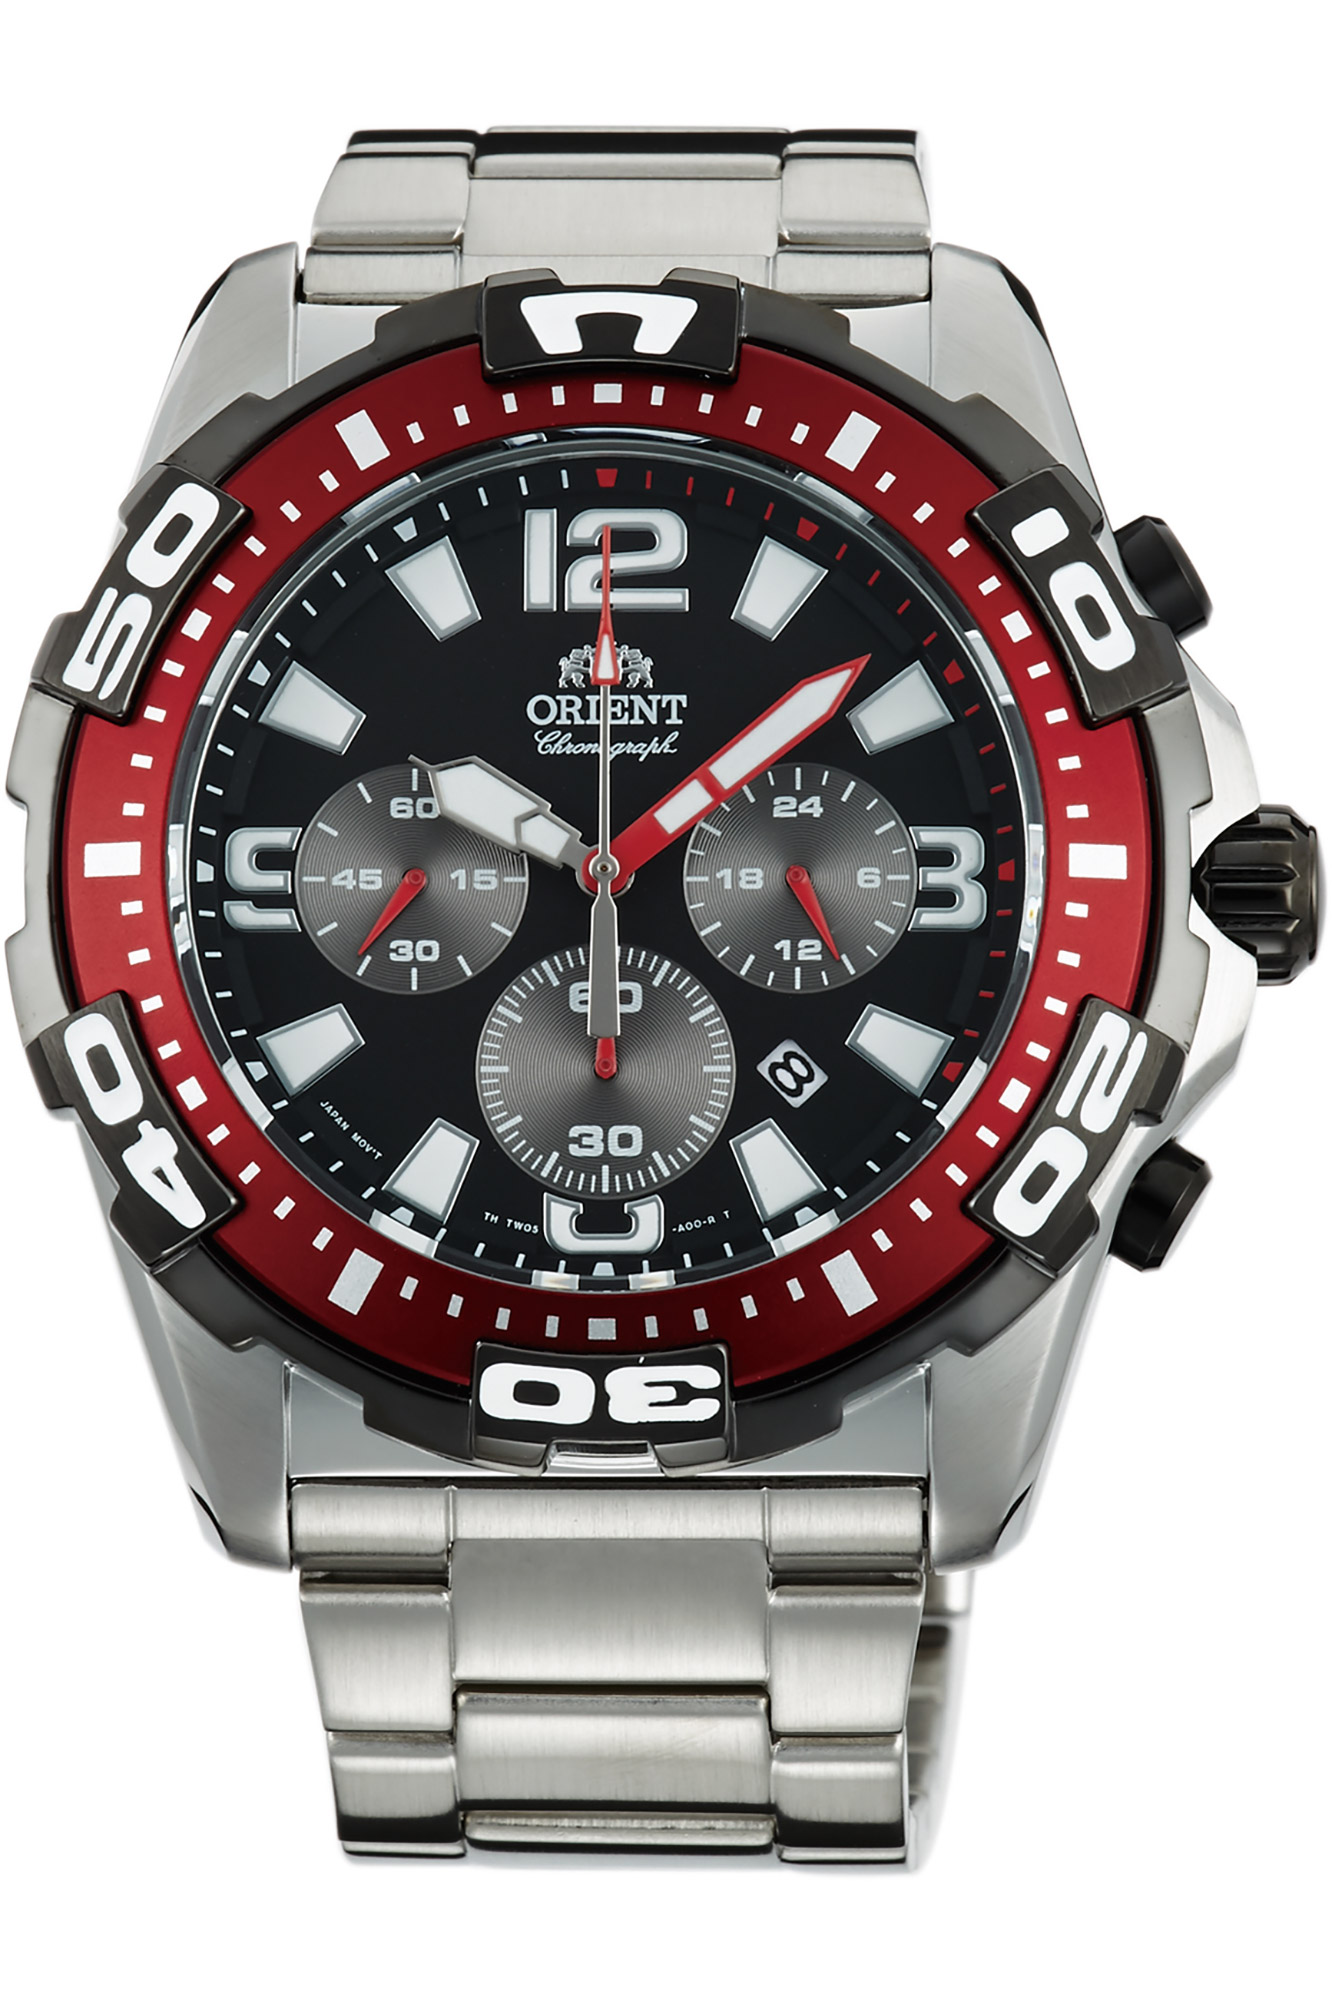 Купить часы ориент в спб. Orient ftw05002t. Наручные часы Orient ftw05002t. Мужские часы Orient tw05001b. Часы Orient sporty Quartz.